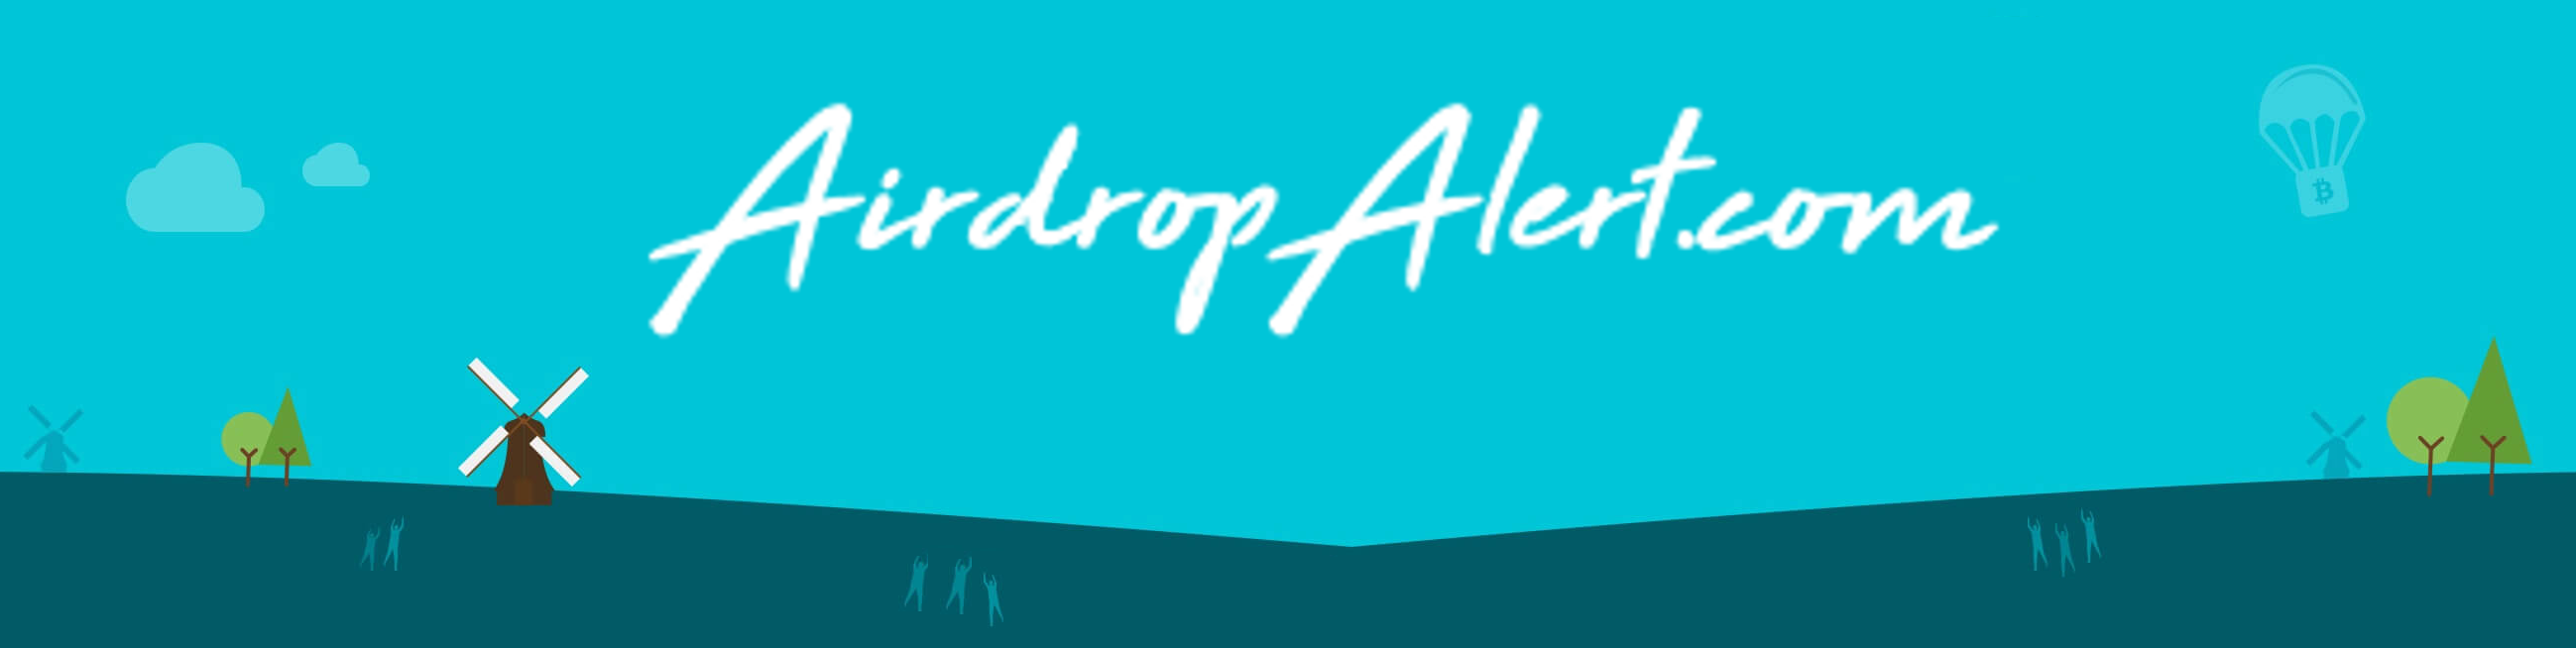 Airdropalert.com